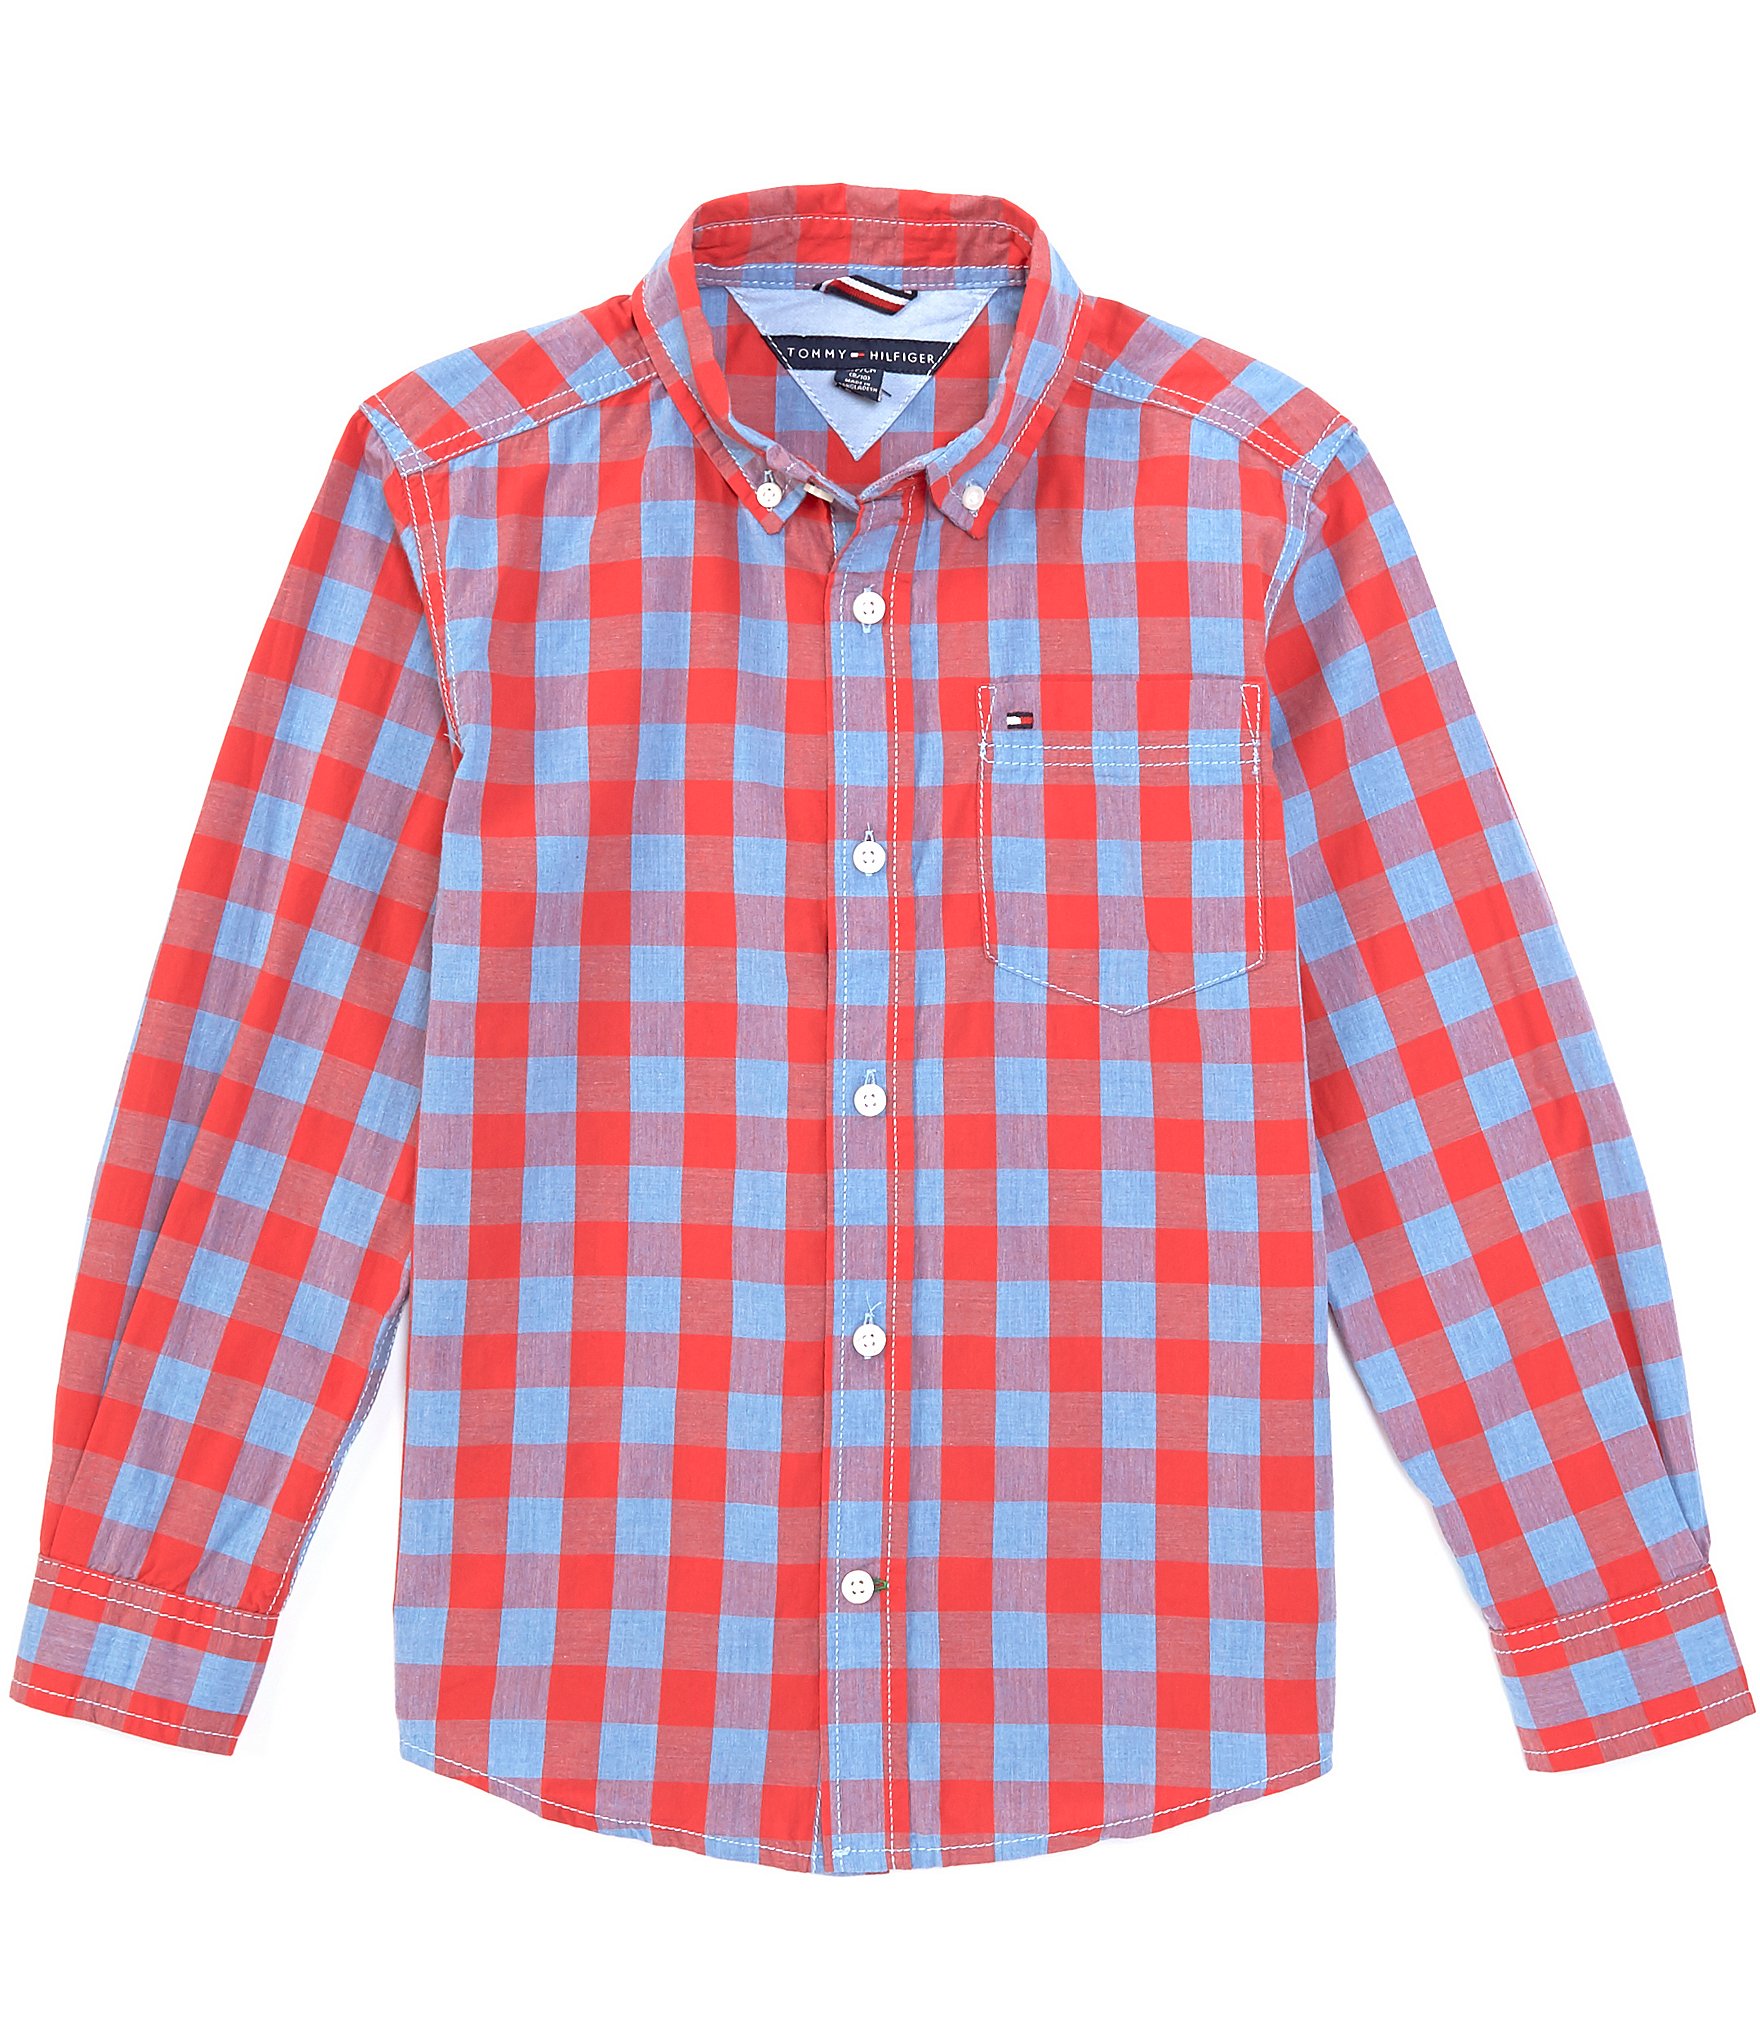 Hilfiger Boys Long-Sleeve Plaid Button-Front Shirt Dillard's